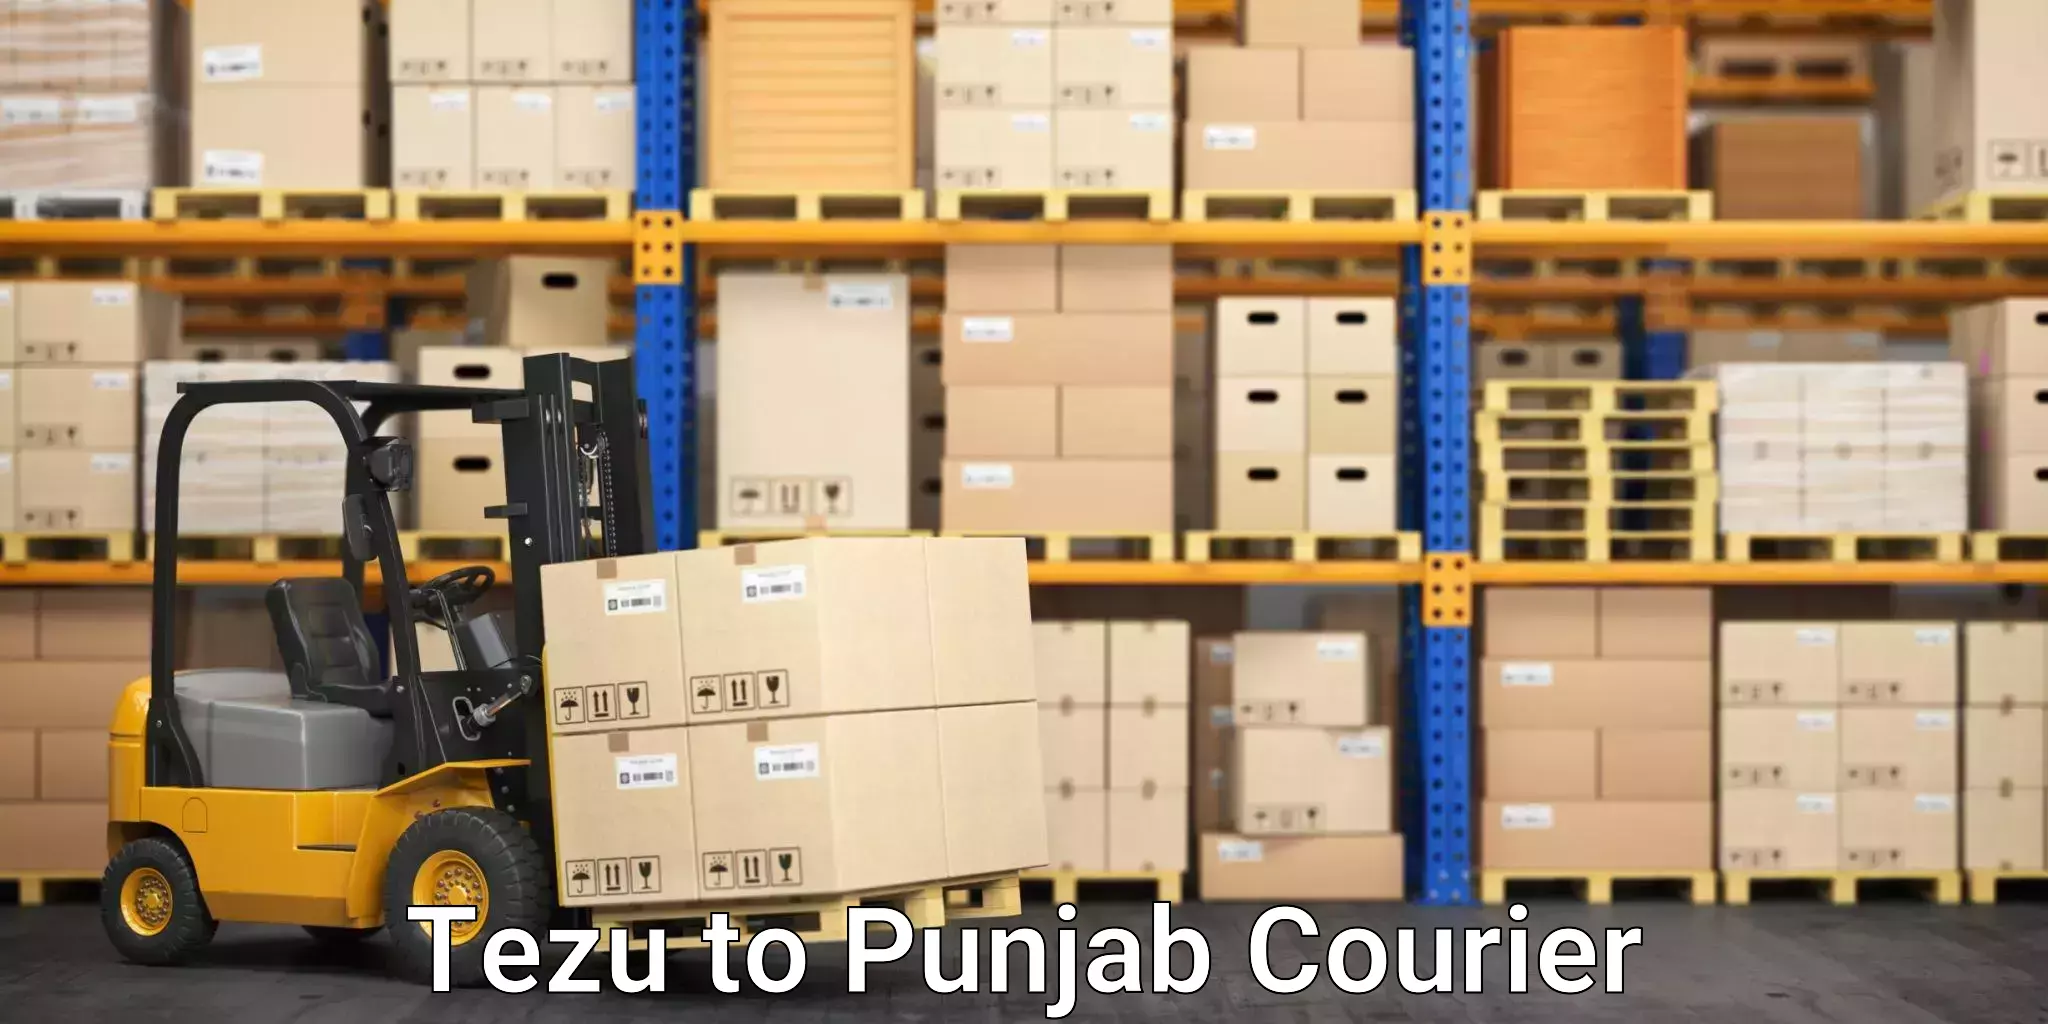 Customer-centric shipping Tezu to Dinanagar